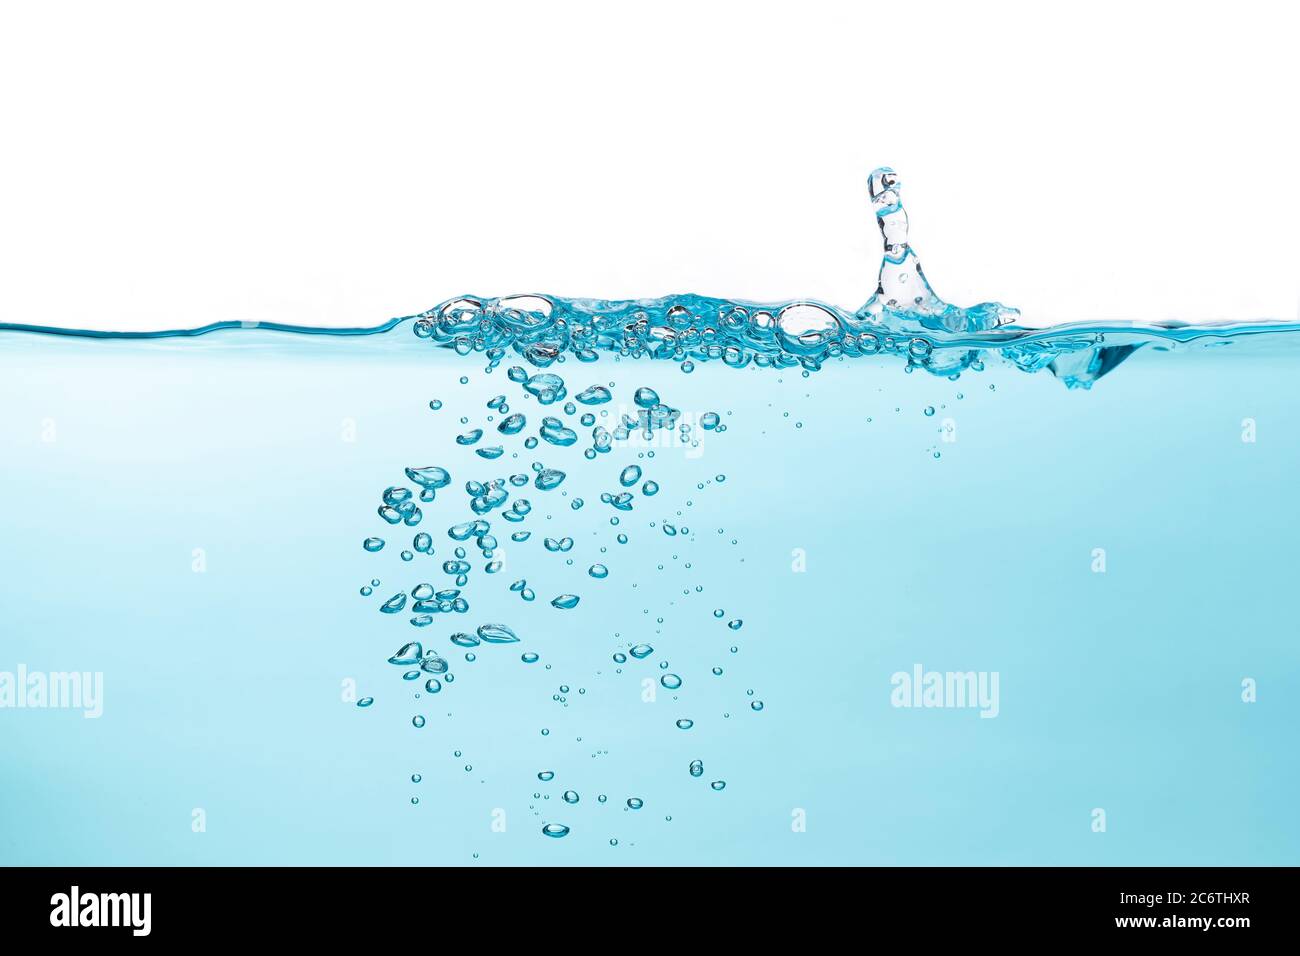 Bolle d'aria e spruzzi d'acqua, acqua spruzzata isolata su sfondo bianco e blu. Foto Stock